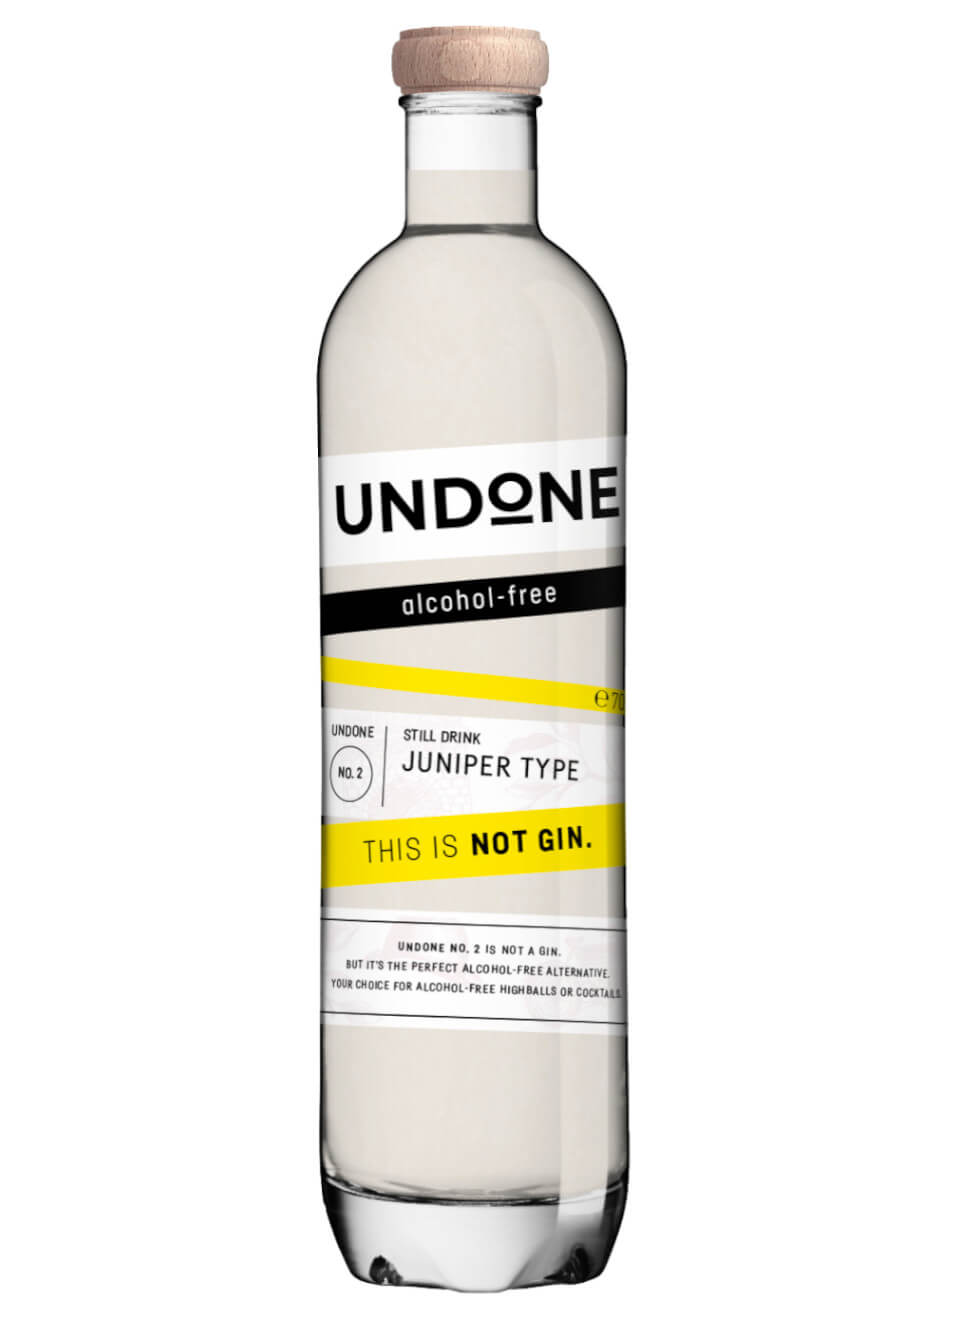 Undone No. 2 Juniper Type alkoholfreier Gin 0,7 L günstig kaufen |  Spirituosenworld.de - Online Shop für Spirituosen und Barzubehör